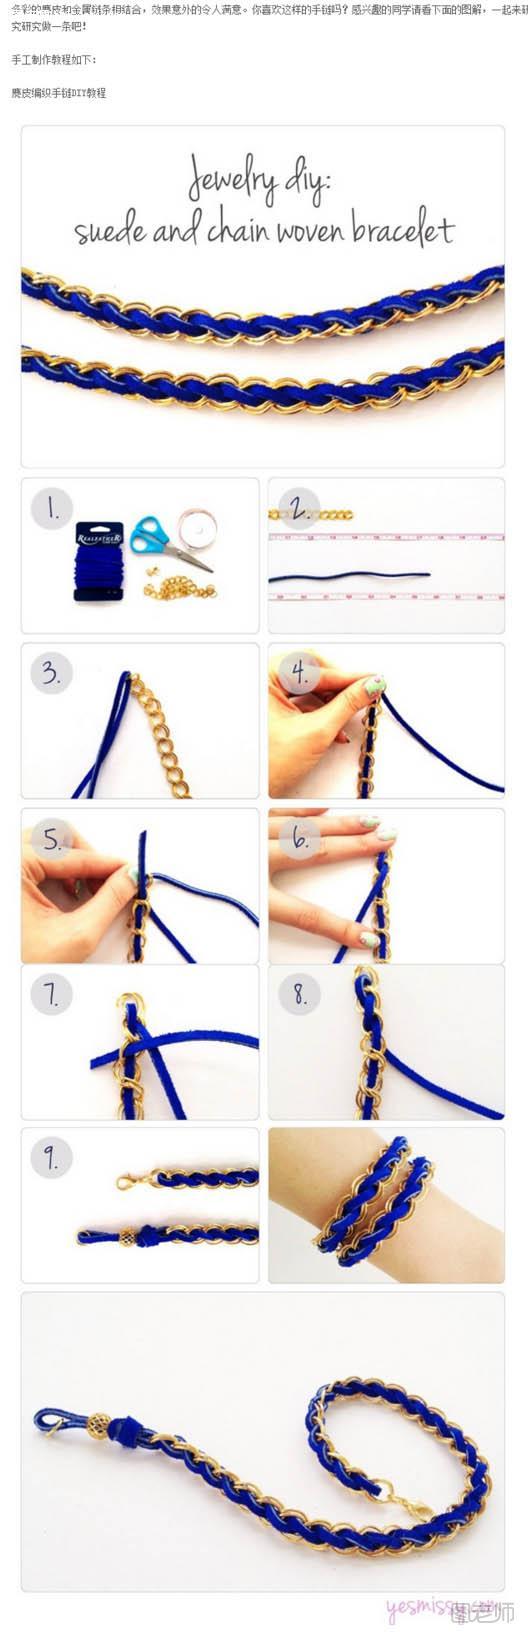 皮绳与金属链合编漂亮的手链手工制作diy教程